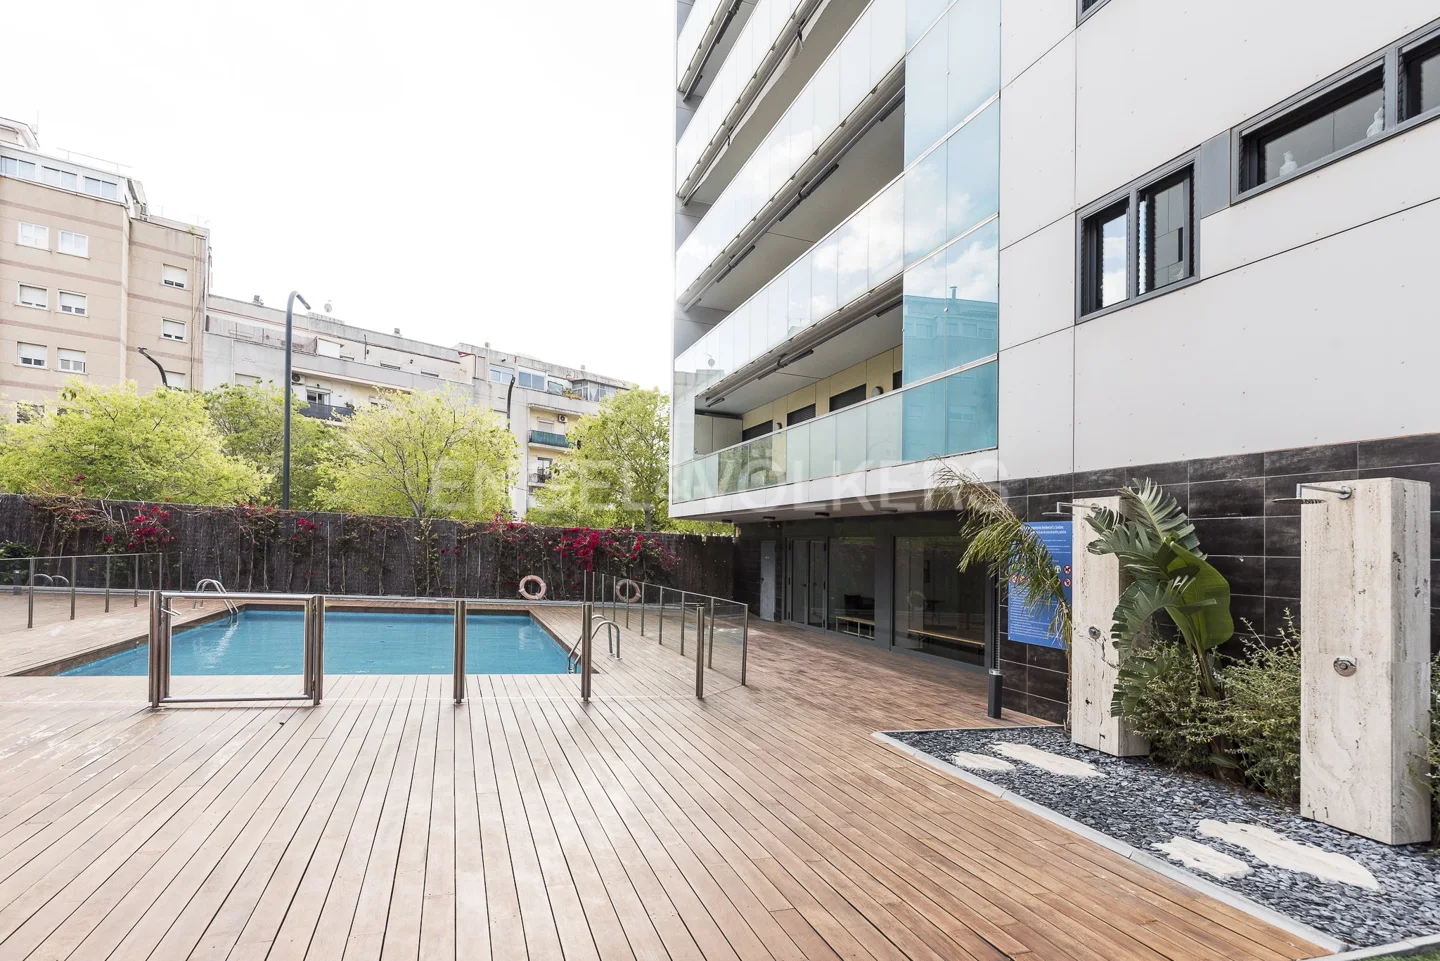 Exclusivo piso con terraza y piscina.